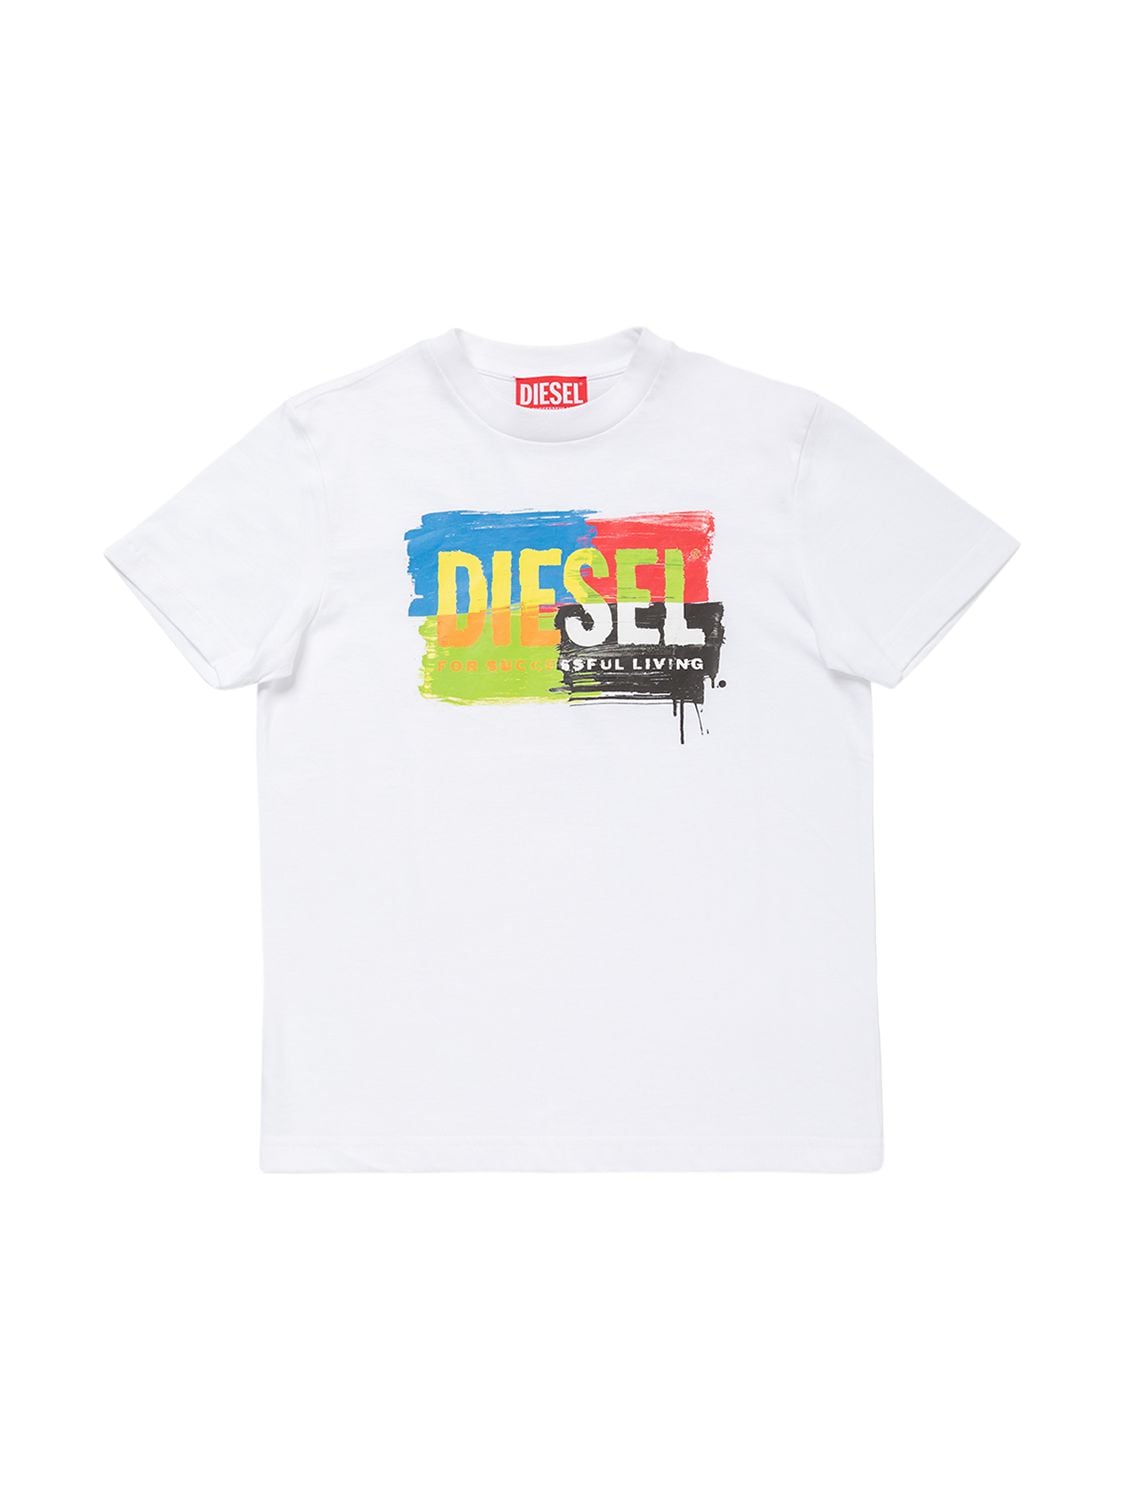 Diesel Kids' Cotton Jersey T-shirt In White